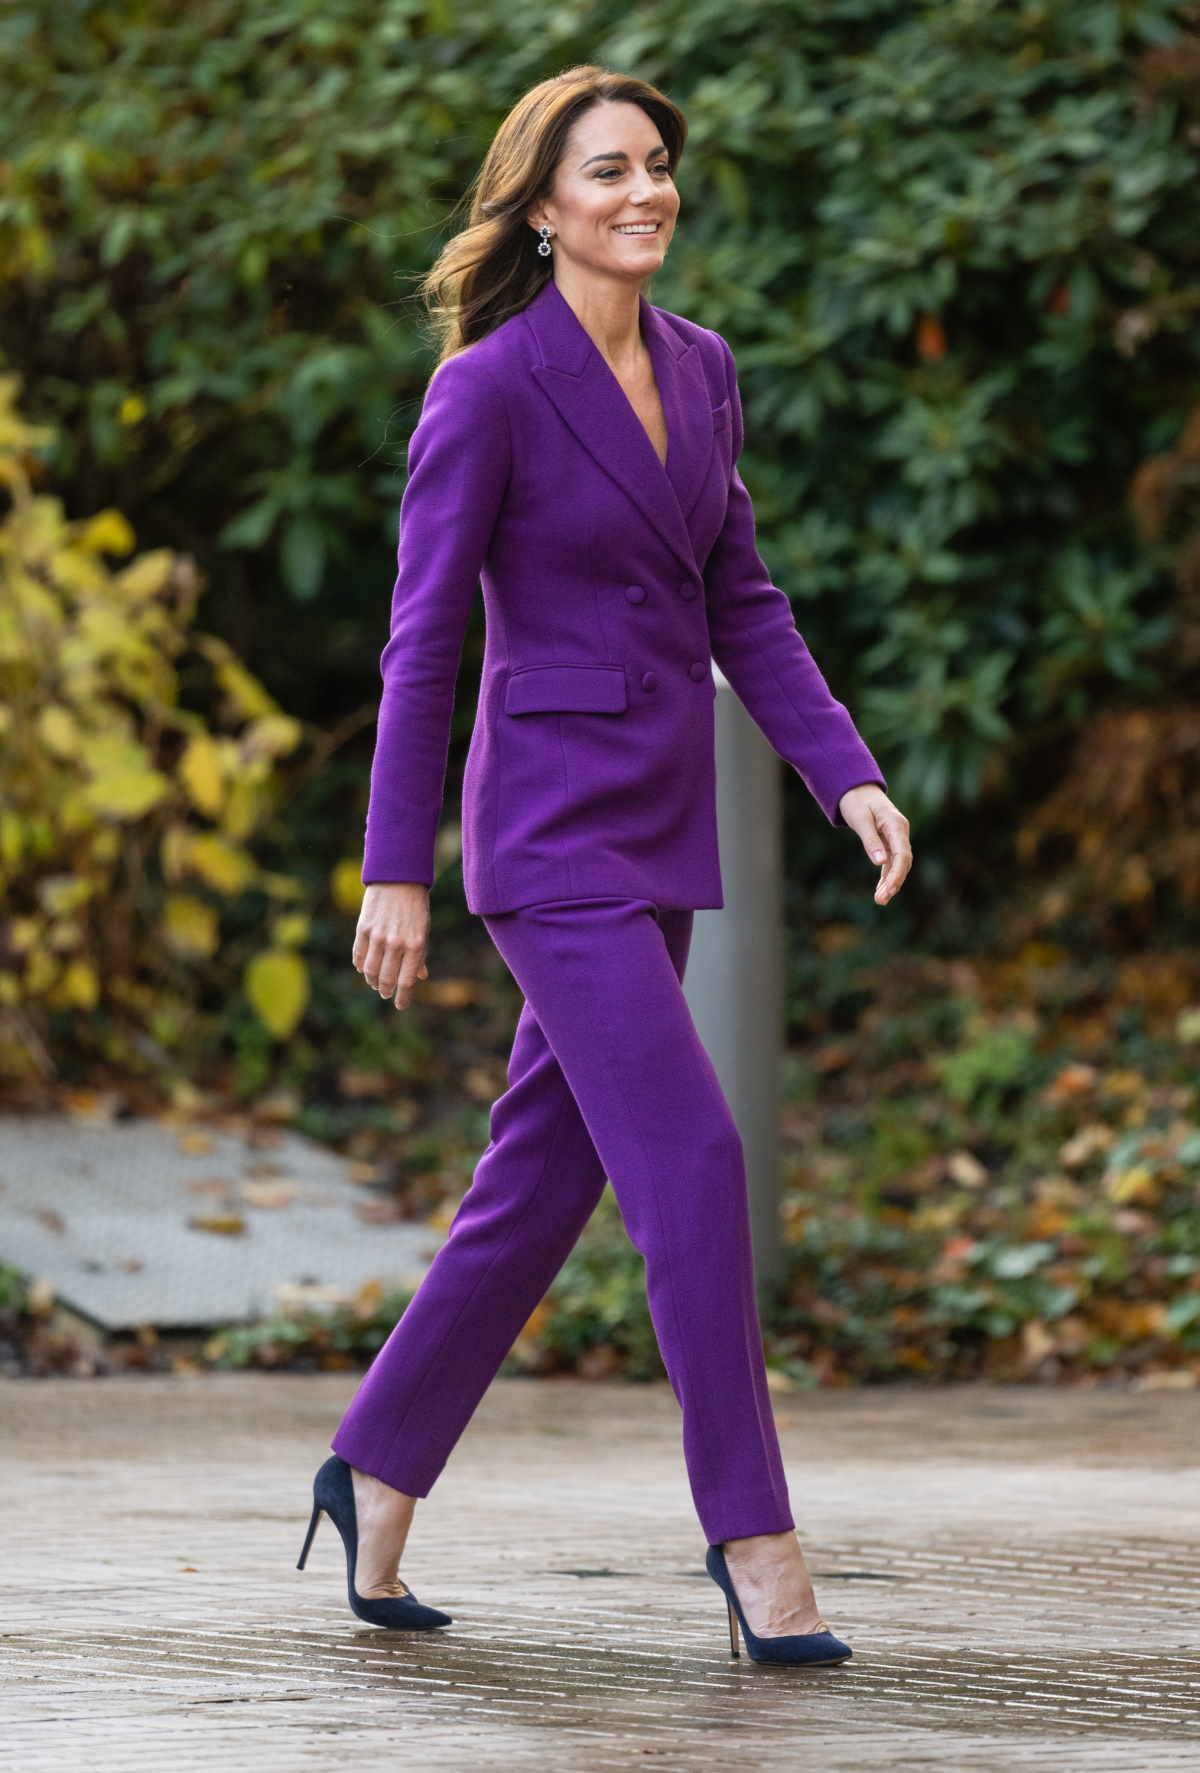 Księżna Kate w garniturze w królewskim odcieniu fioletu. Księżna Kate pojawiła się na londyńskim wydarzeniu w ulubionym fioletowym garniturze projektu Emilii Wickstead.